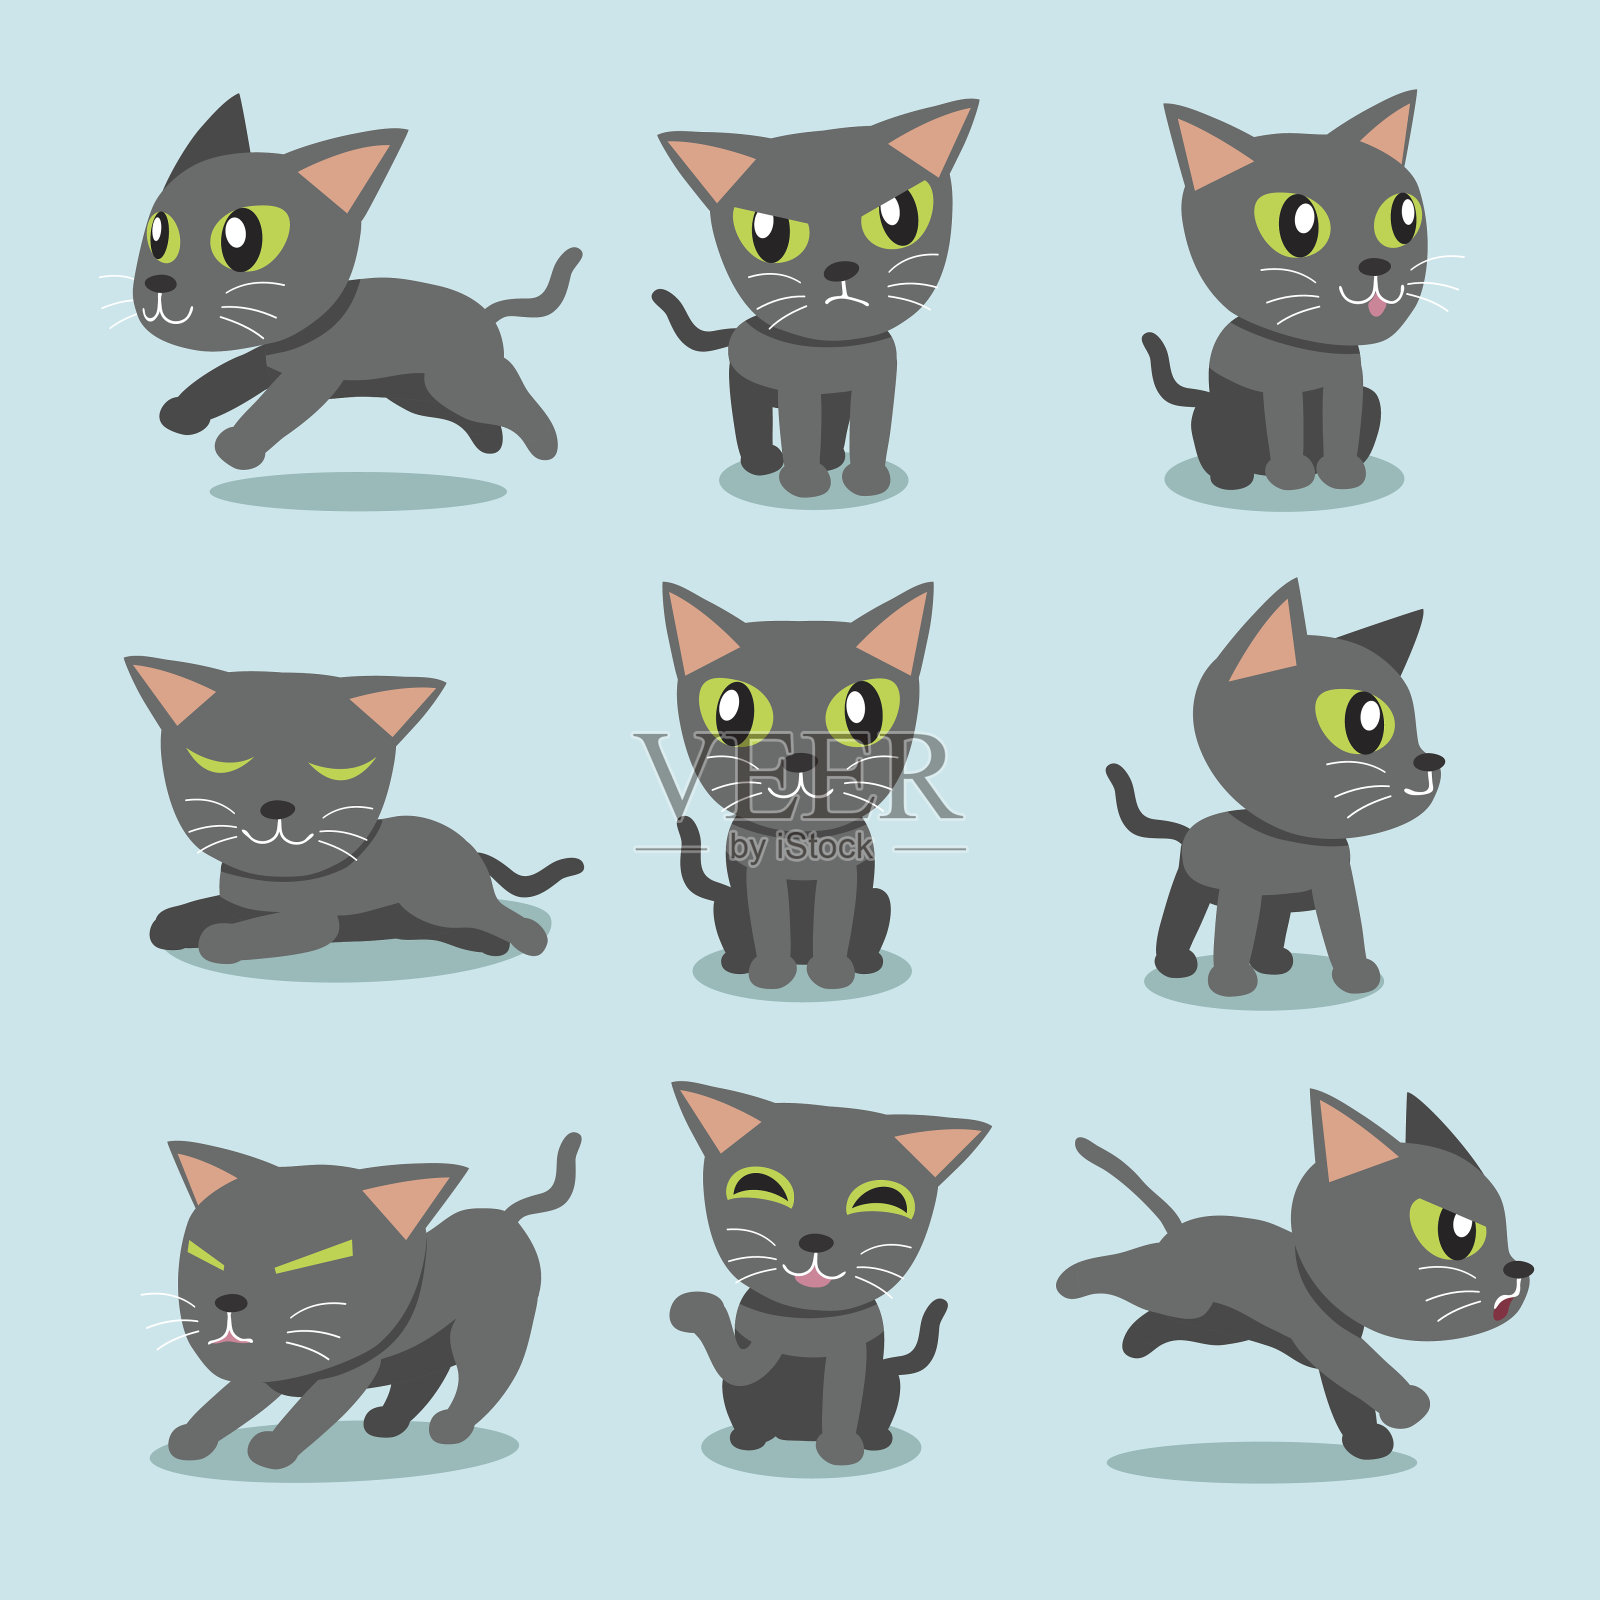 卡通人物俄罗斯猫姿势插画图片素材